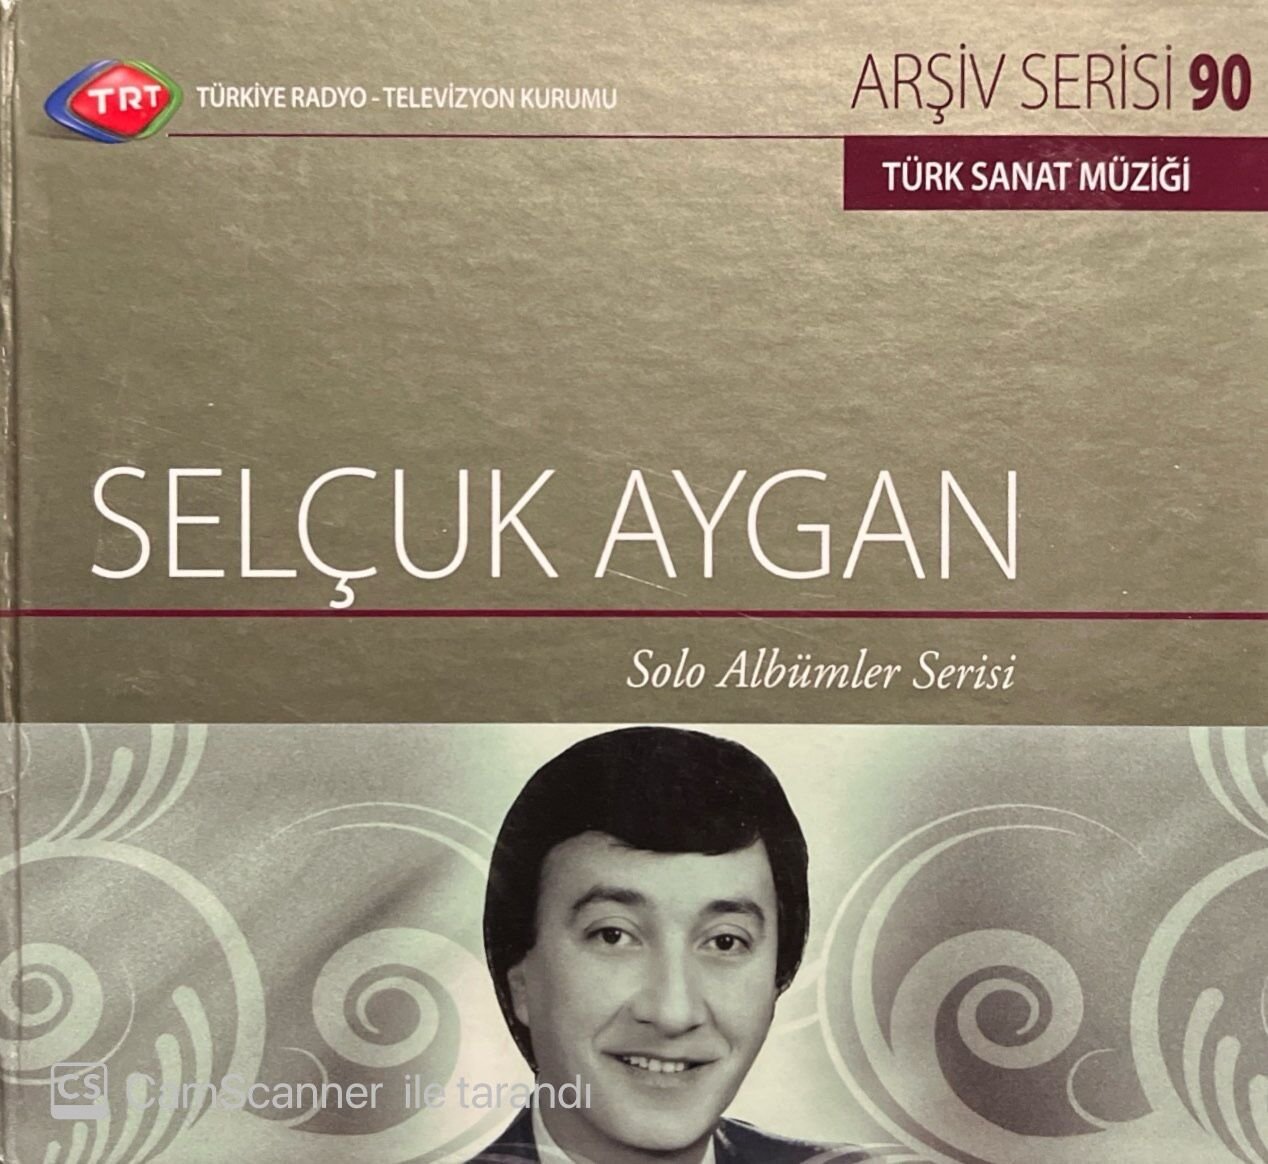 TRT Arşiv Serisi 90 Selçuk Aygan Solo Albümler Serisi CD